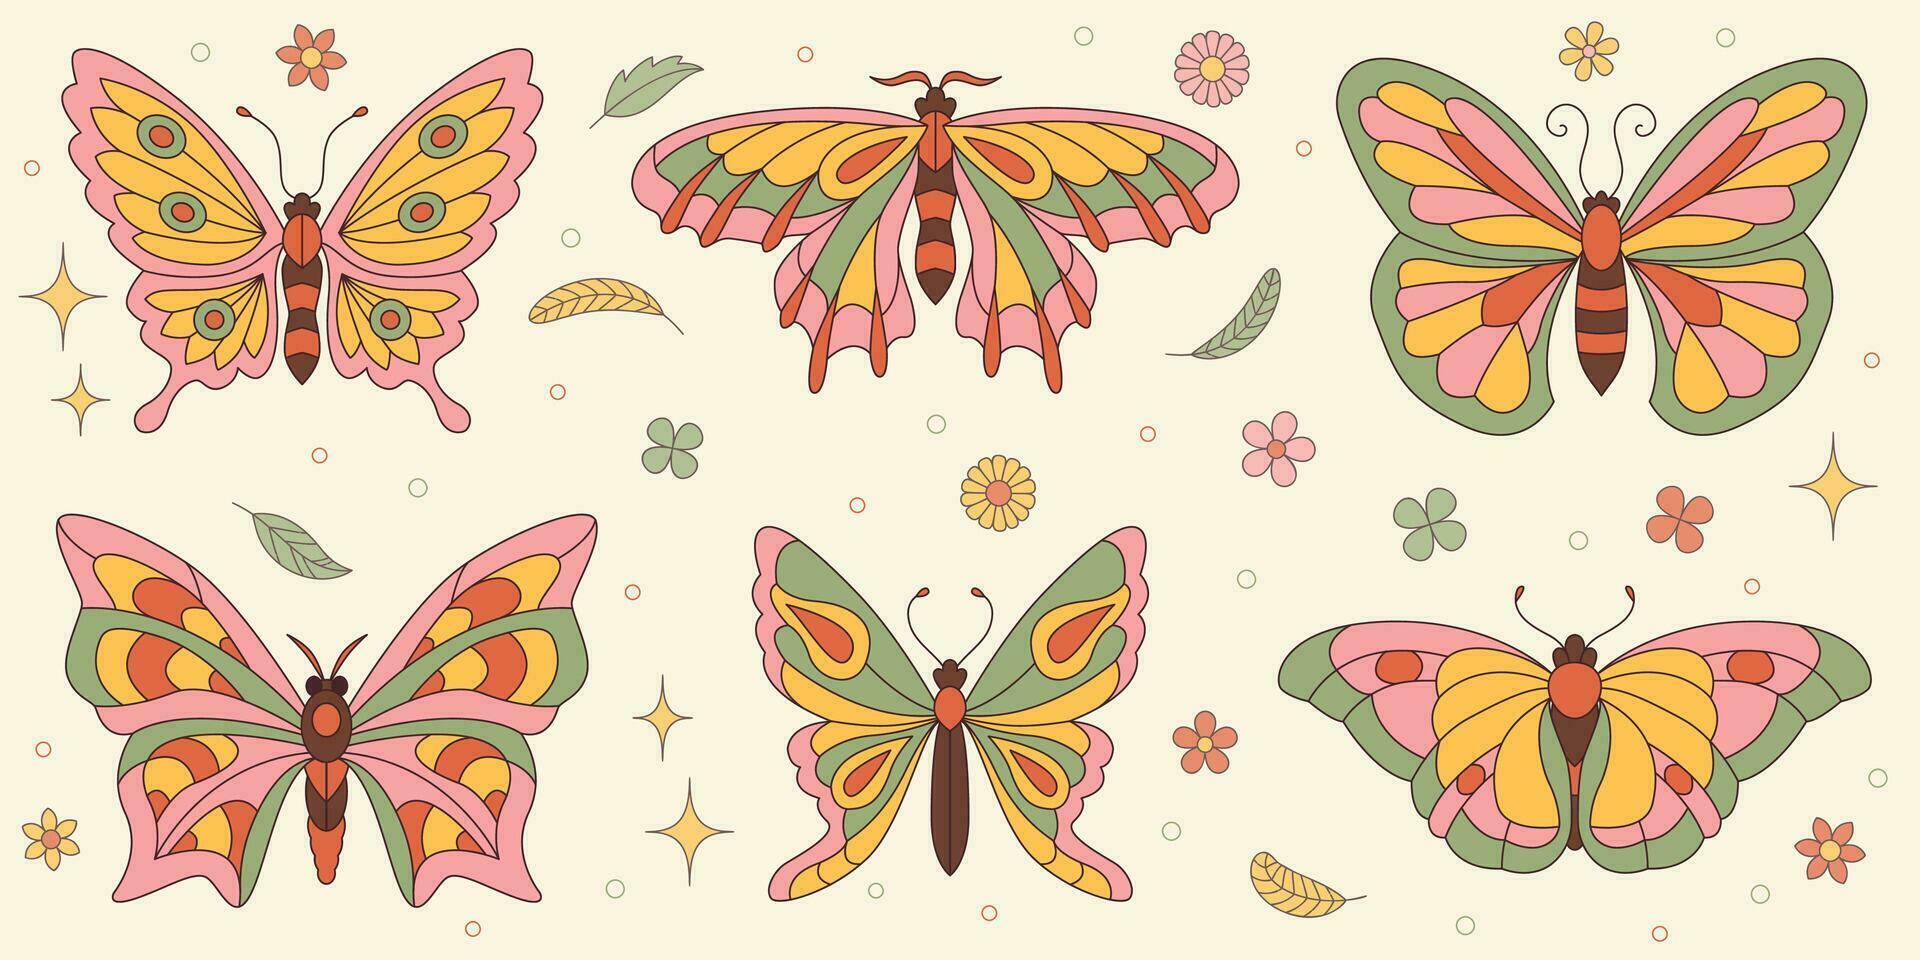 maravilloso mariposa pegatinas colocar. hippie 60s 70s retro estilo. amarillo, rosado verde colores. vector